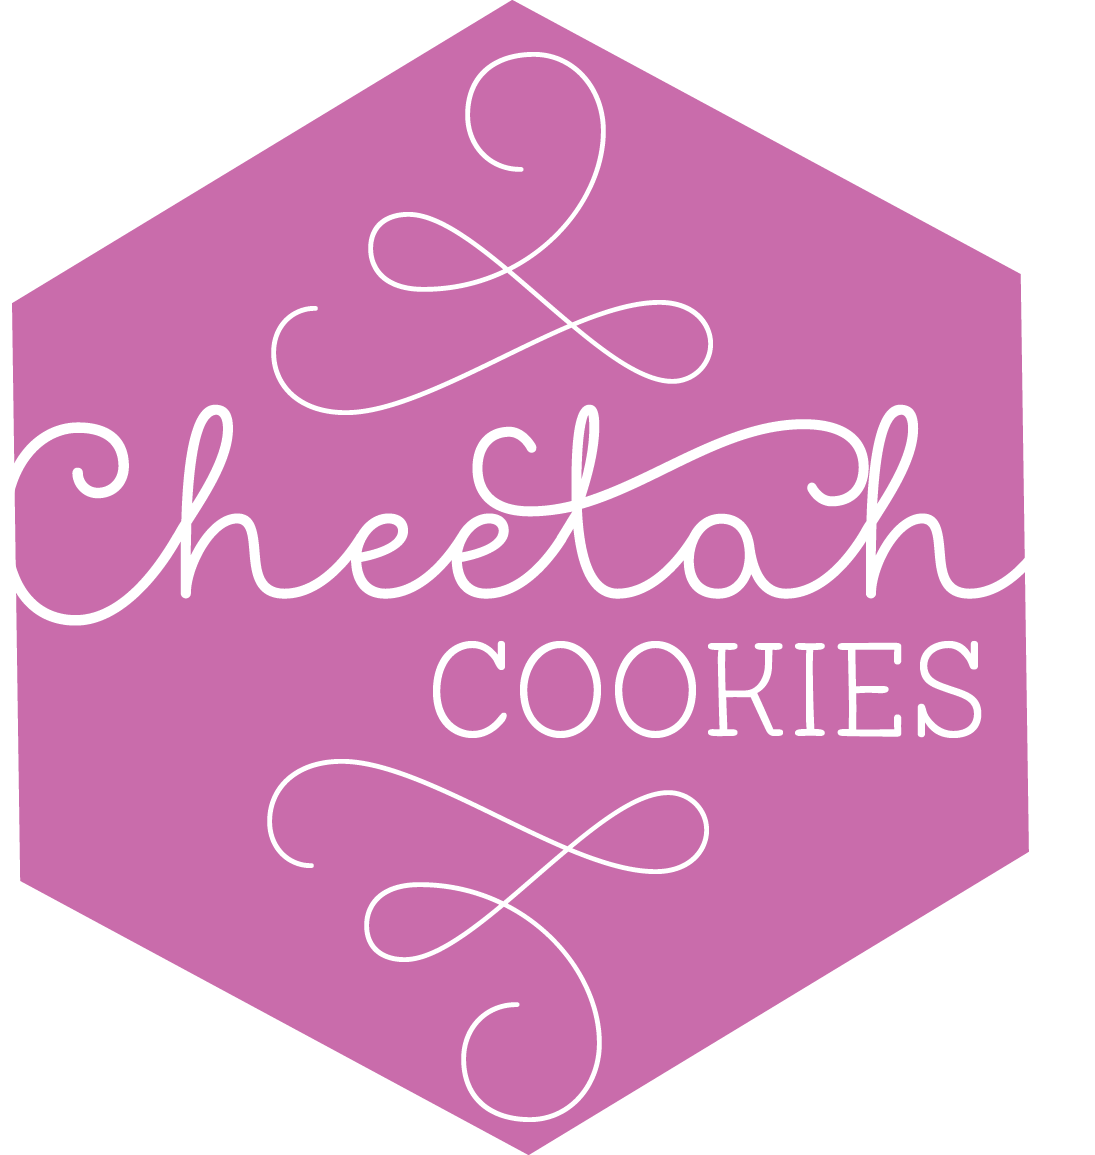 Cheetah Cookies